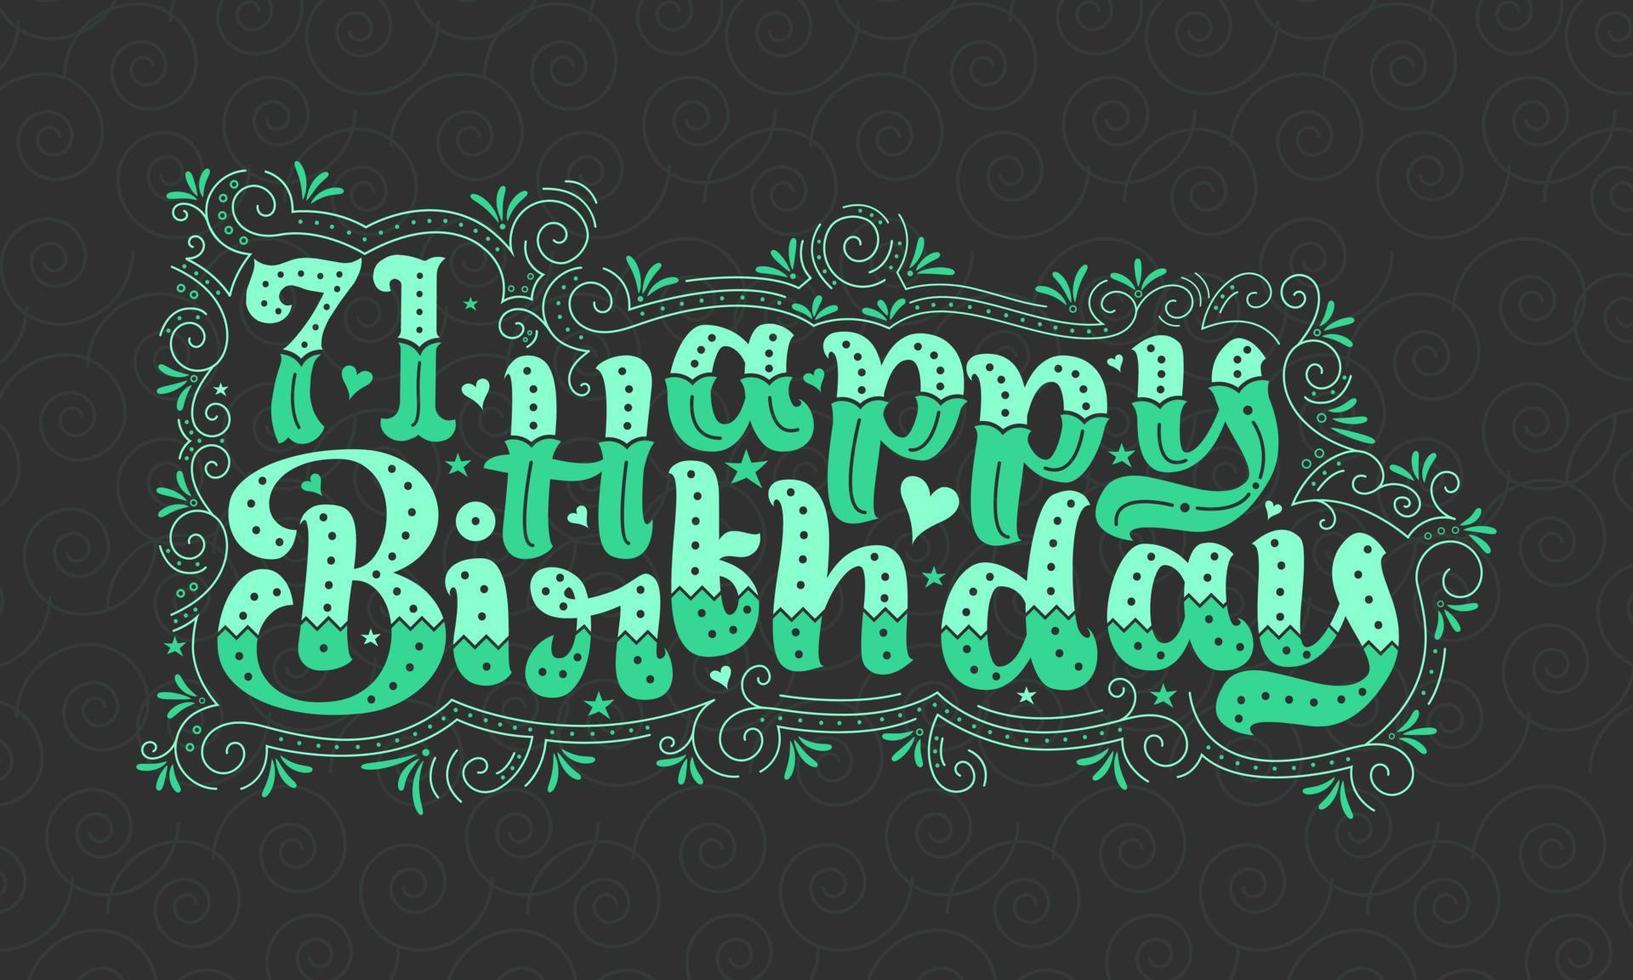 71. Happy Birthday Schriftzug, 71 Jahre Geburtstag schönes Typografie-Design mit grünen Punkten, Linien und Blättern. vektor